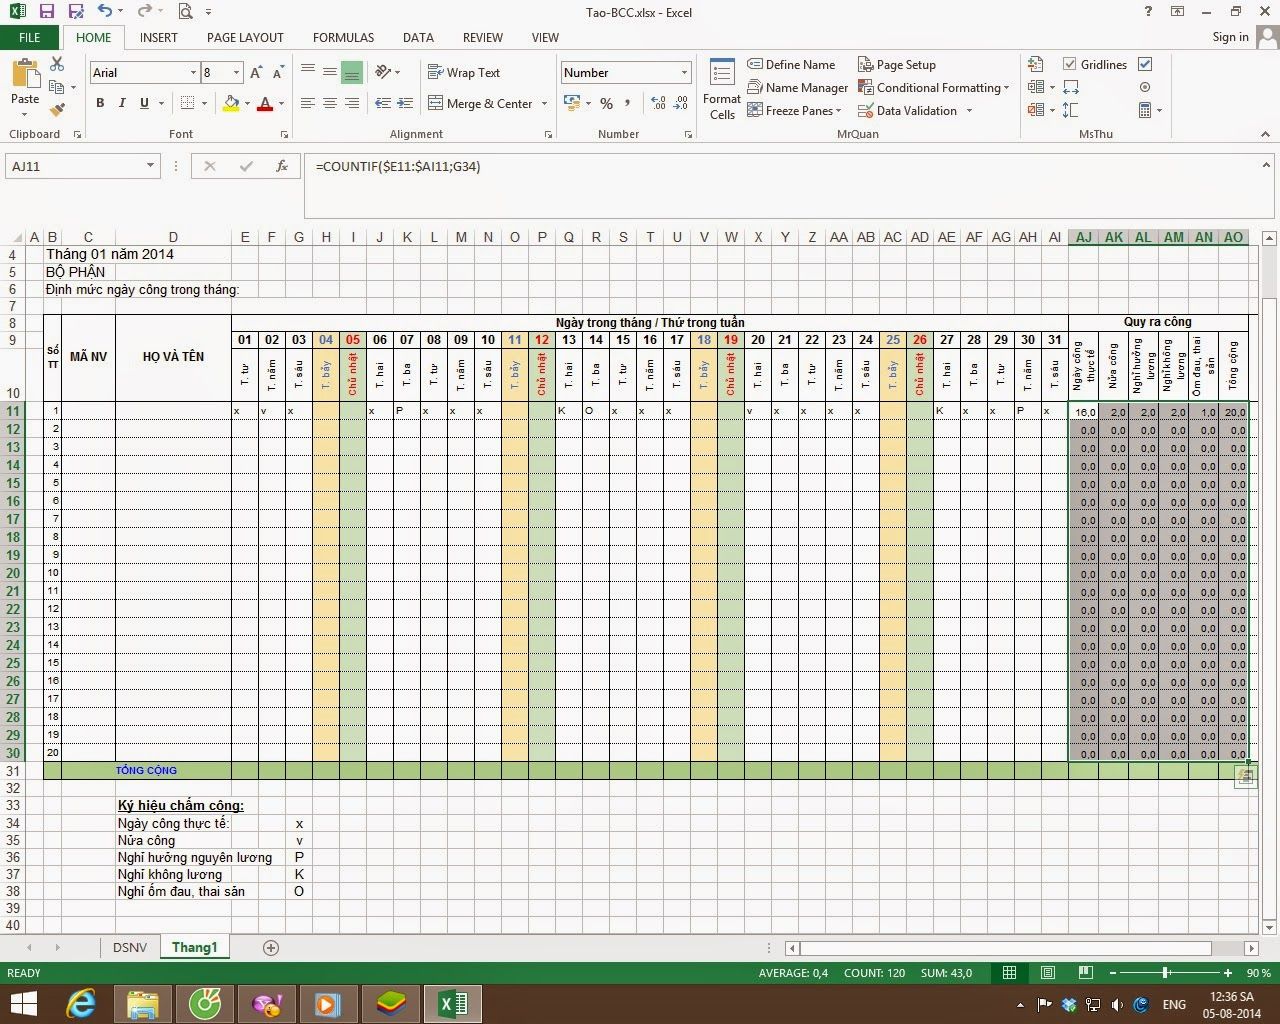 Cách tính bảng chấm công trong excel được thực hiện như thế nào? Hướng dẫn cách tạo bảng chấm công trên Excel chi tiết nhất 48